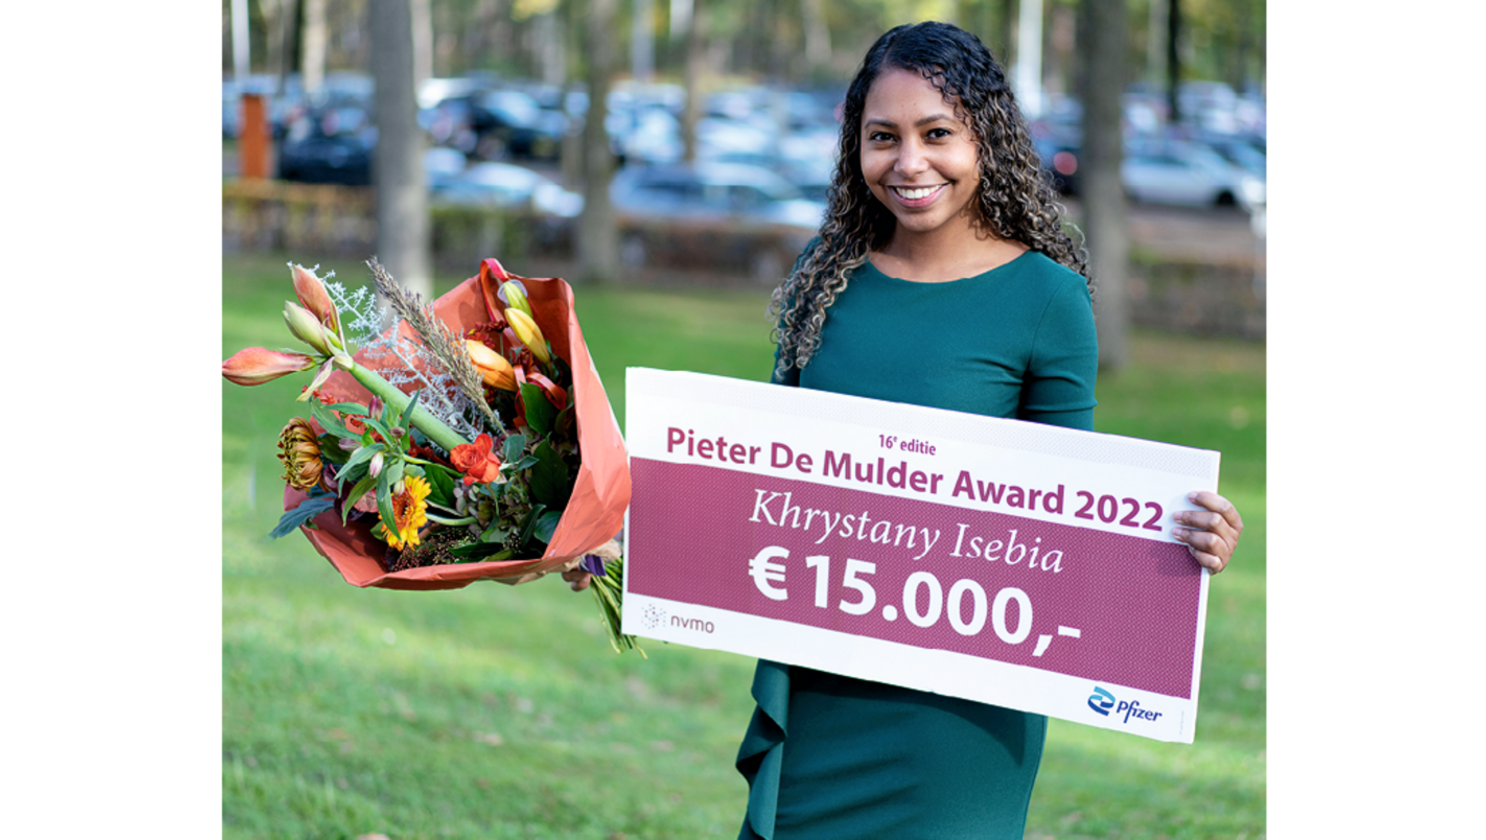 Foto (kleur) Khrystany Isebia met de Pieter De Mulder Award 2022